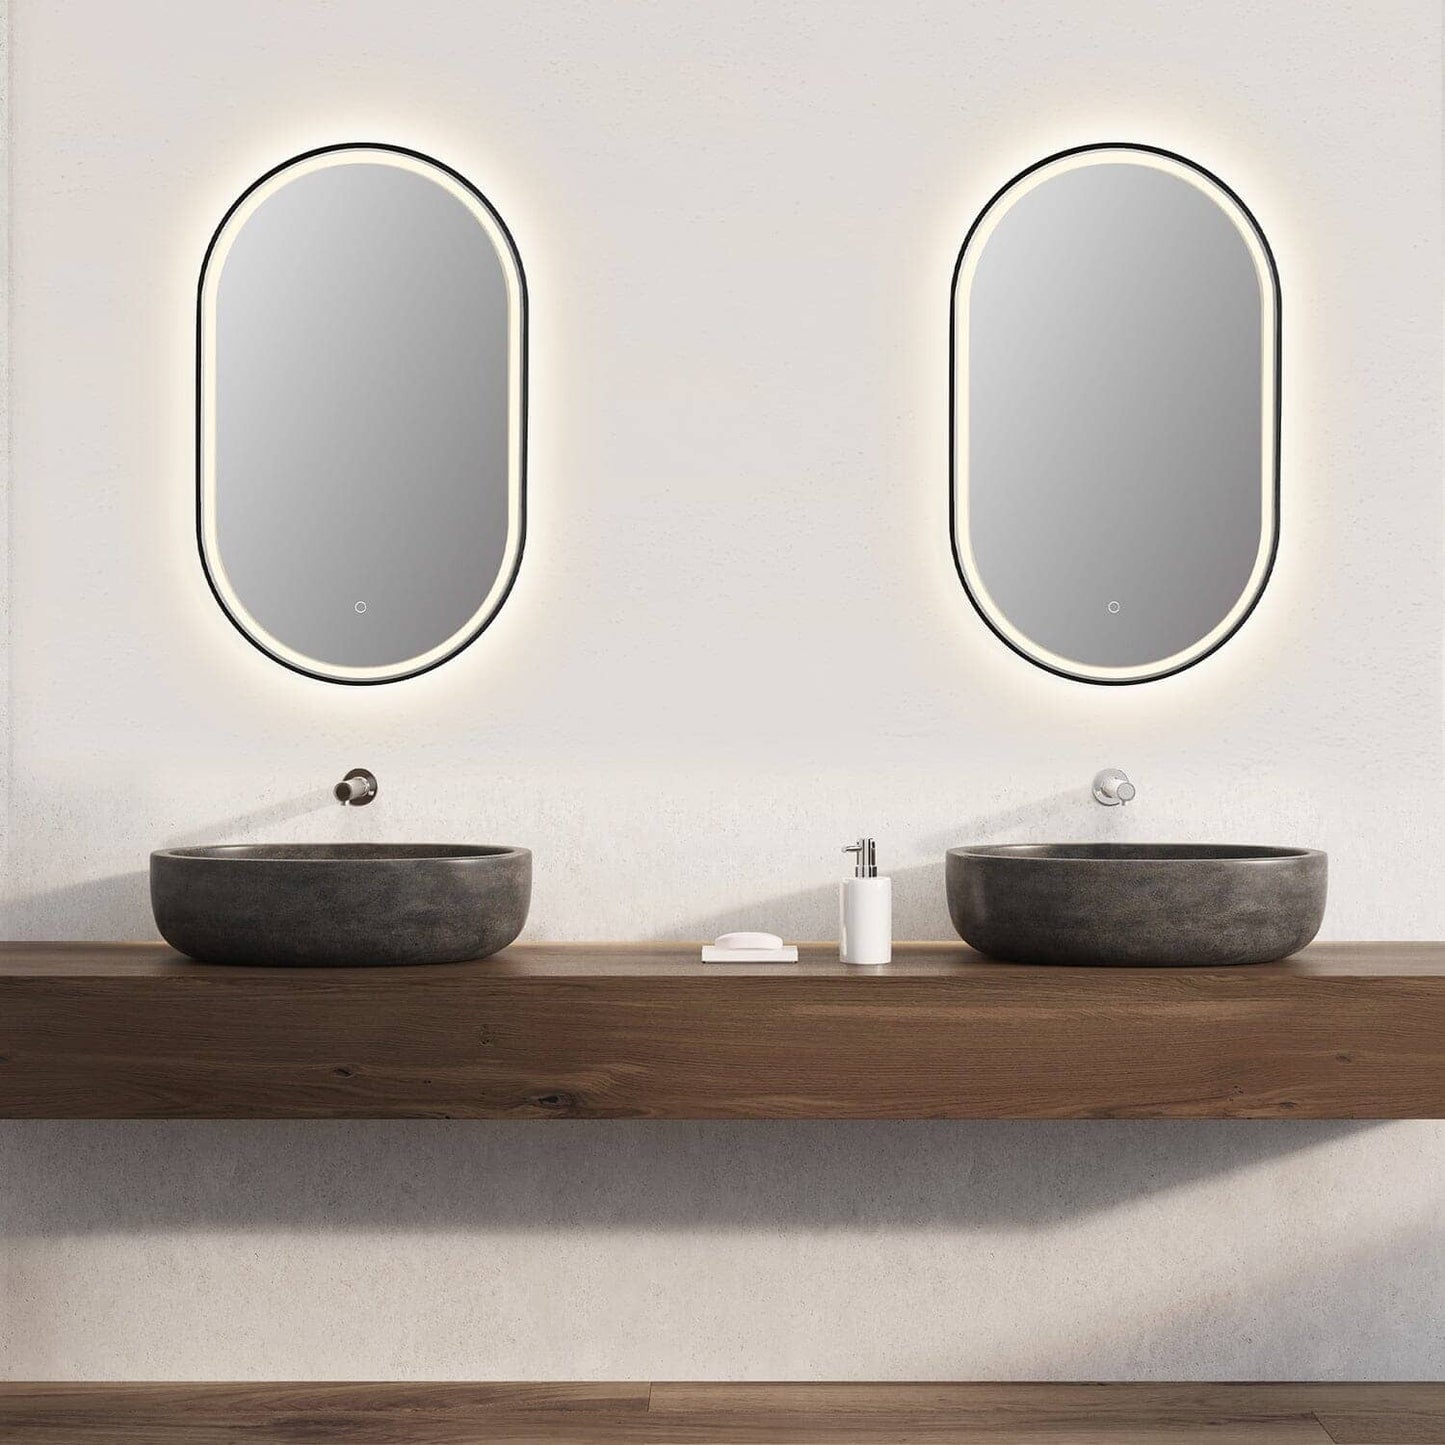 Altair Oleggio Oval 36" Bathroom Vanity LED Lighted Wall Mirror - Black Frame